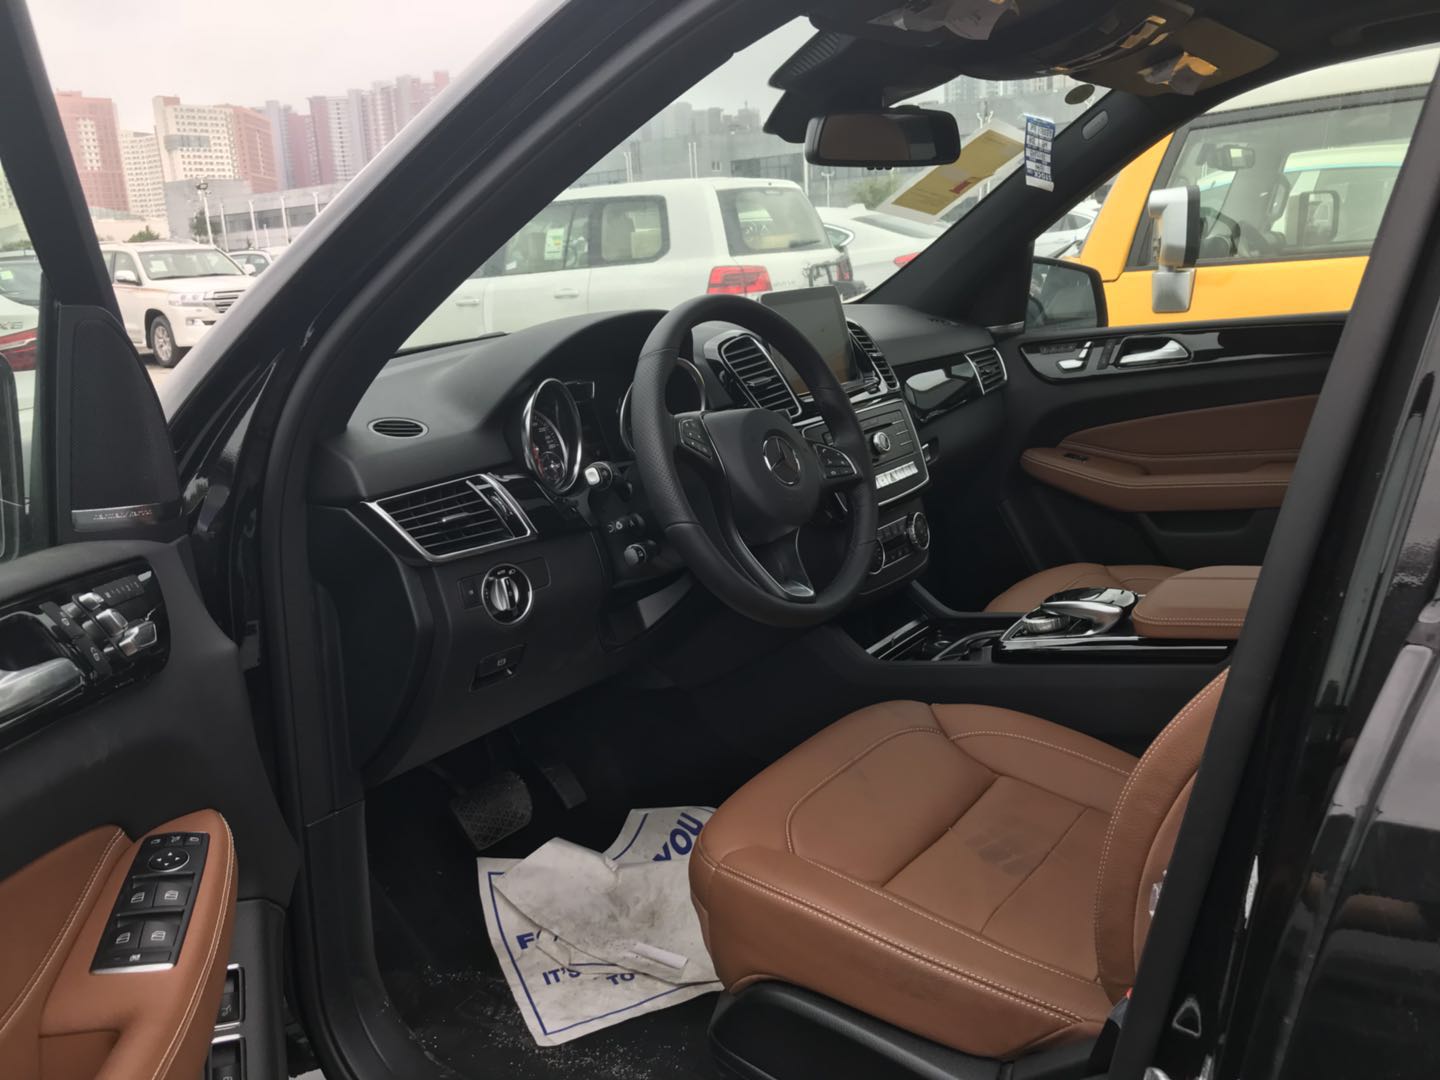 2018款奔驰新款油电混合奔驰GLE550e现车价格钜降